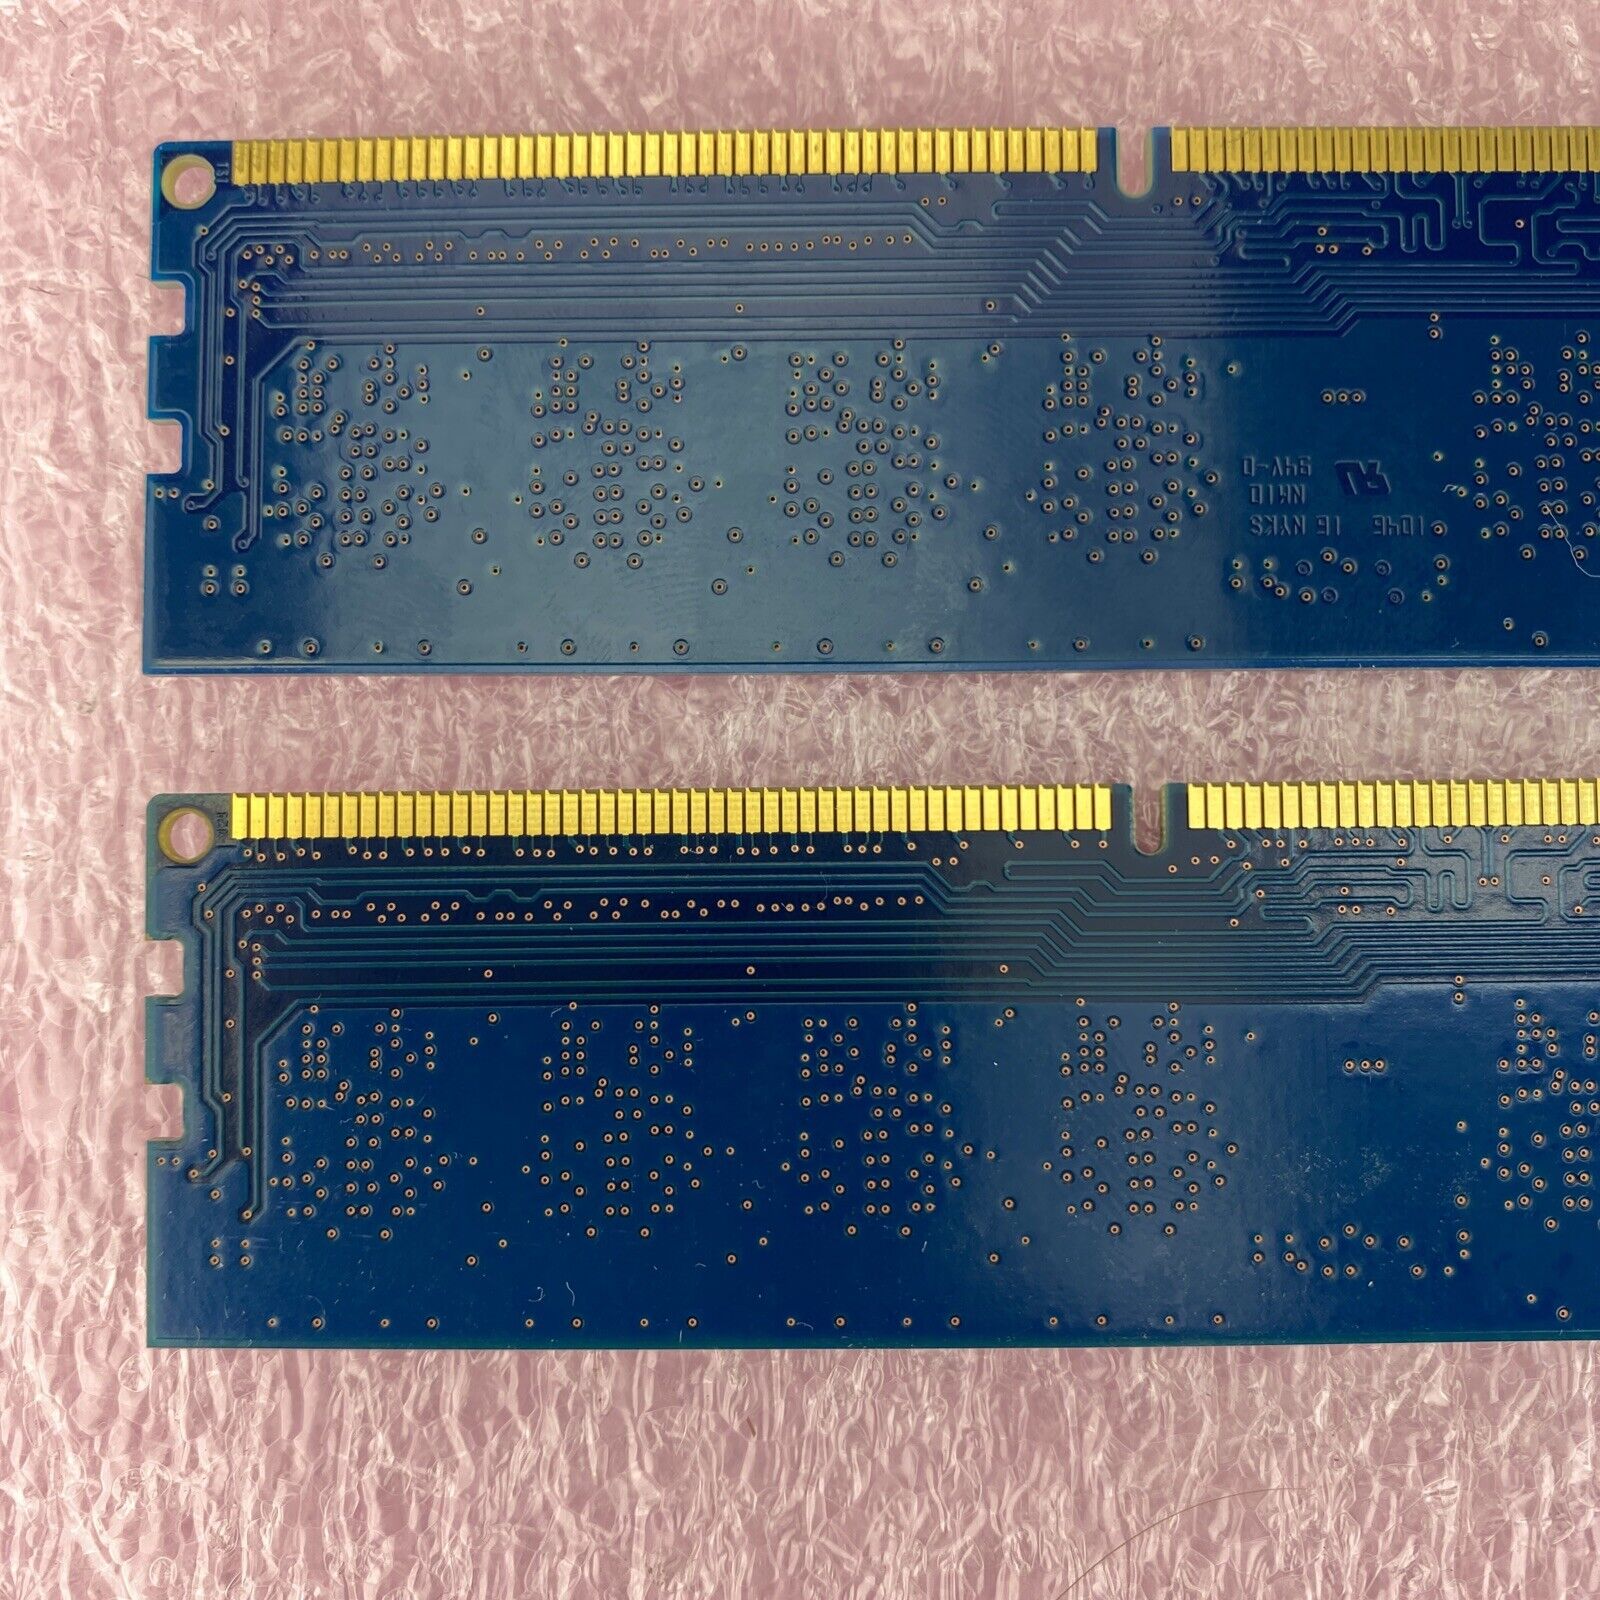 2x 2GB Nanya NT2GC64B88B0NF-CG PC3-10600 1Rx8 1333MHz SDRAM memory